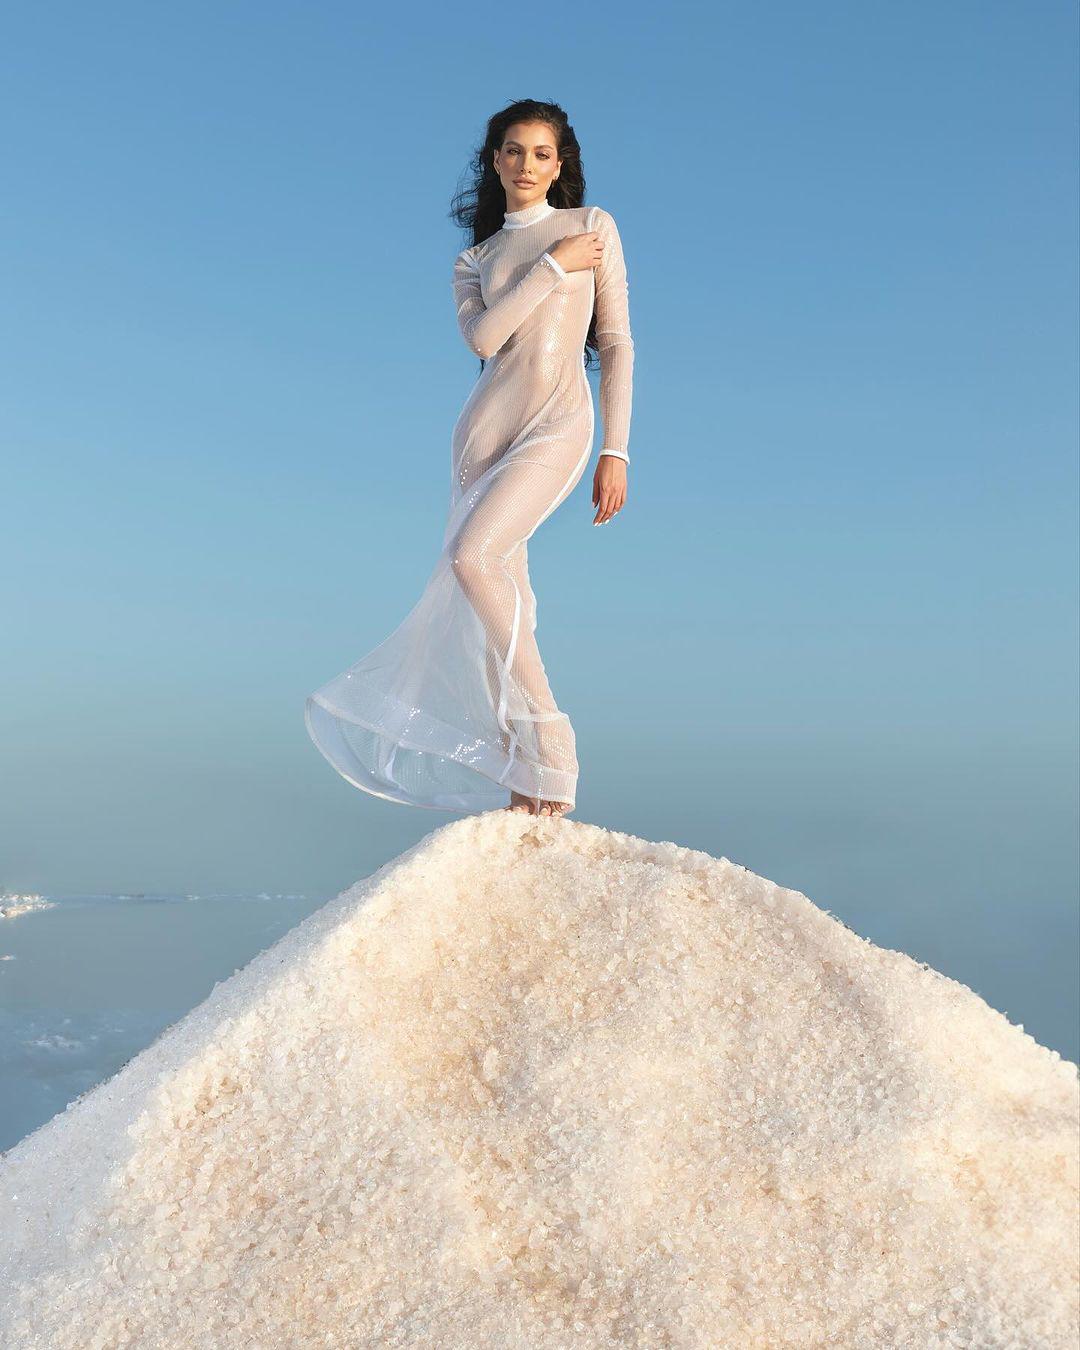 Valentina Figuera khoe đường cong hình thể nóng bỏng trong mẫu đầm dài, chất liệu xuyên thấu. 